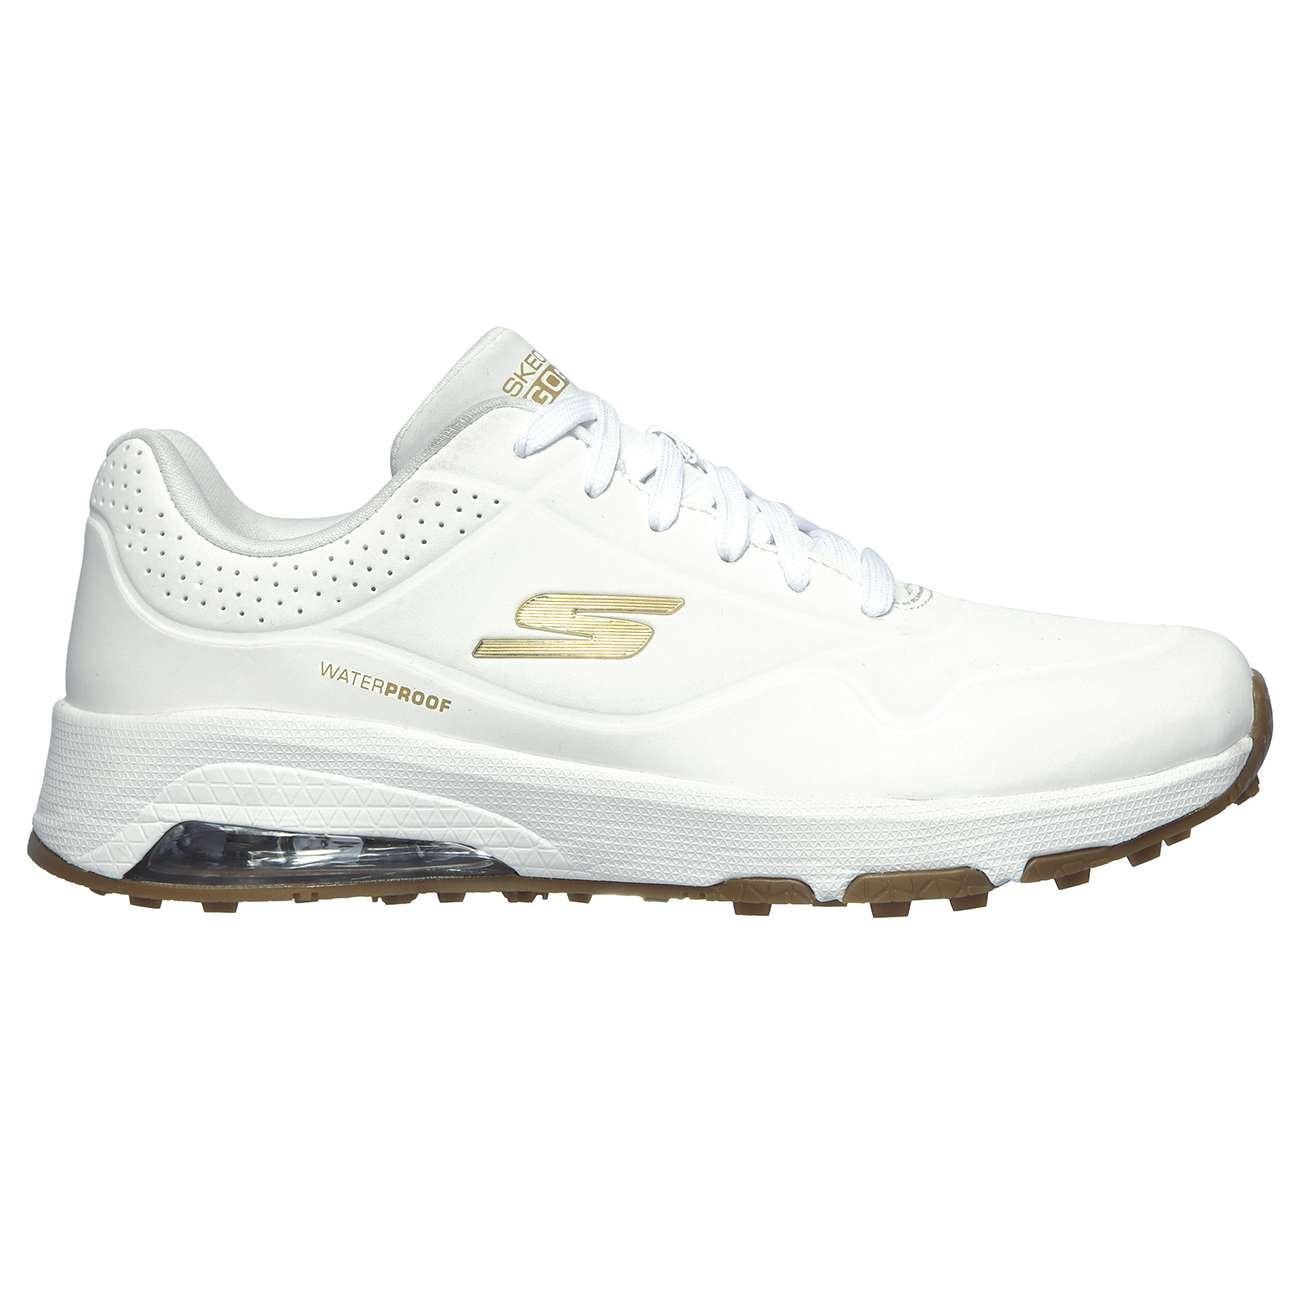 oler Elaborar mosquito Skech-Air-DOS Women's Golf Shoe